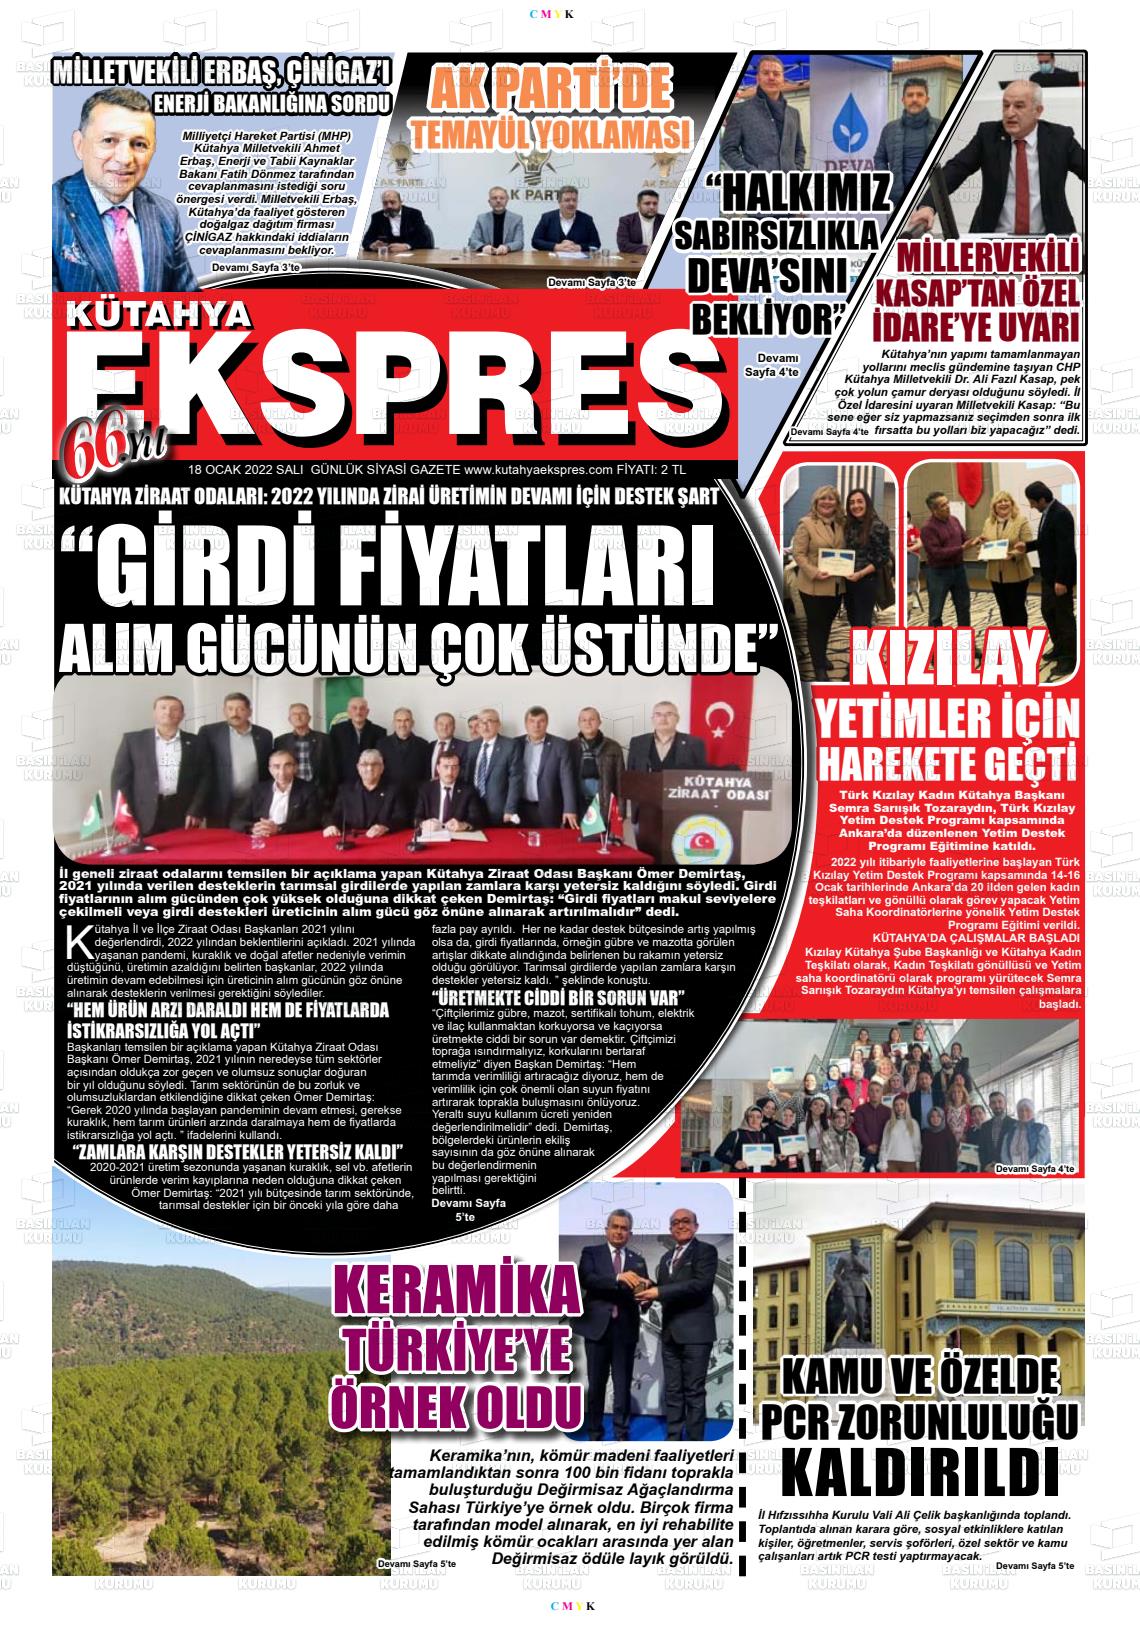 18 Ocak 2022 Kütahya Ekspres Gazete Manşeti